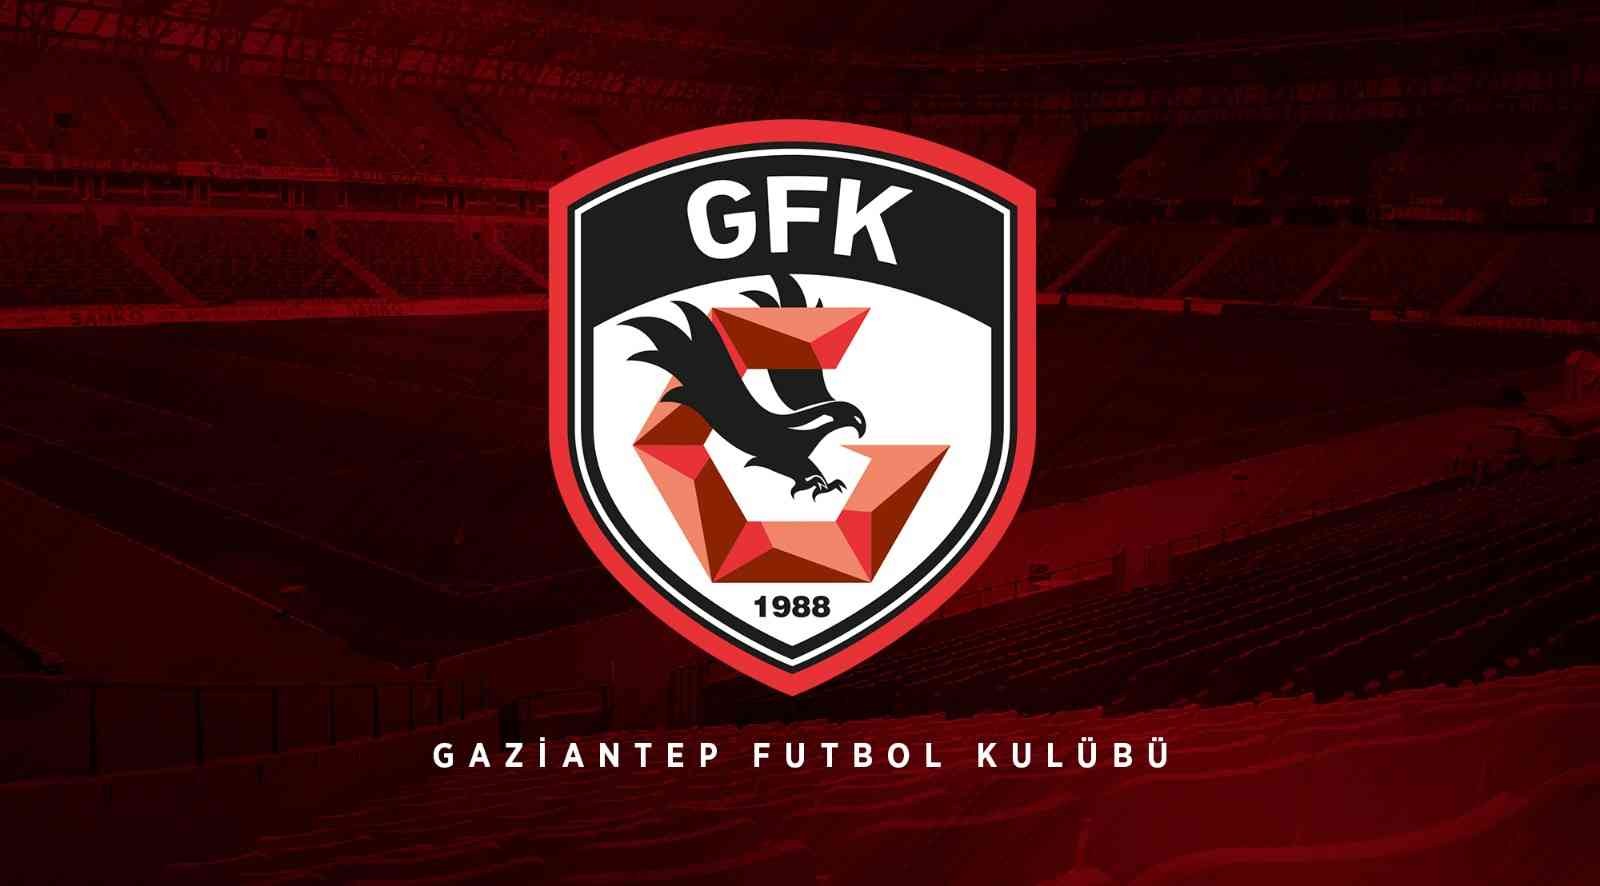 Gaziantep FK’da bir oyuncunun testi pozitif çıktı #gaziantep